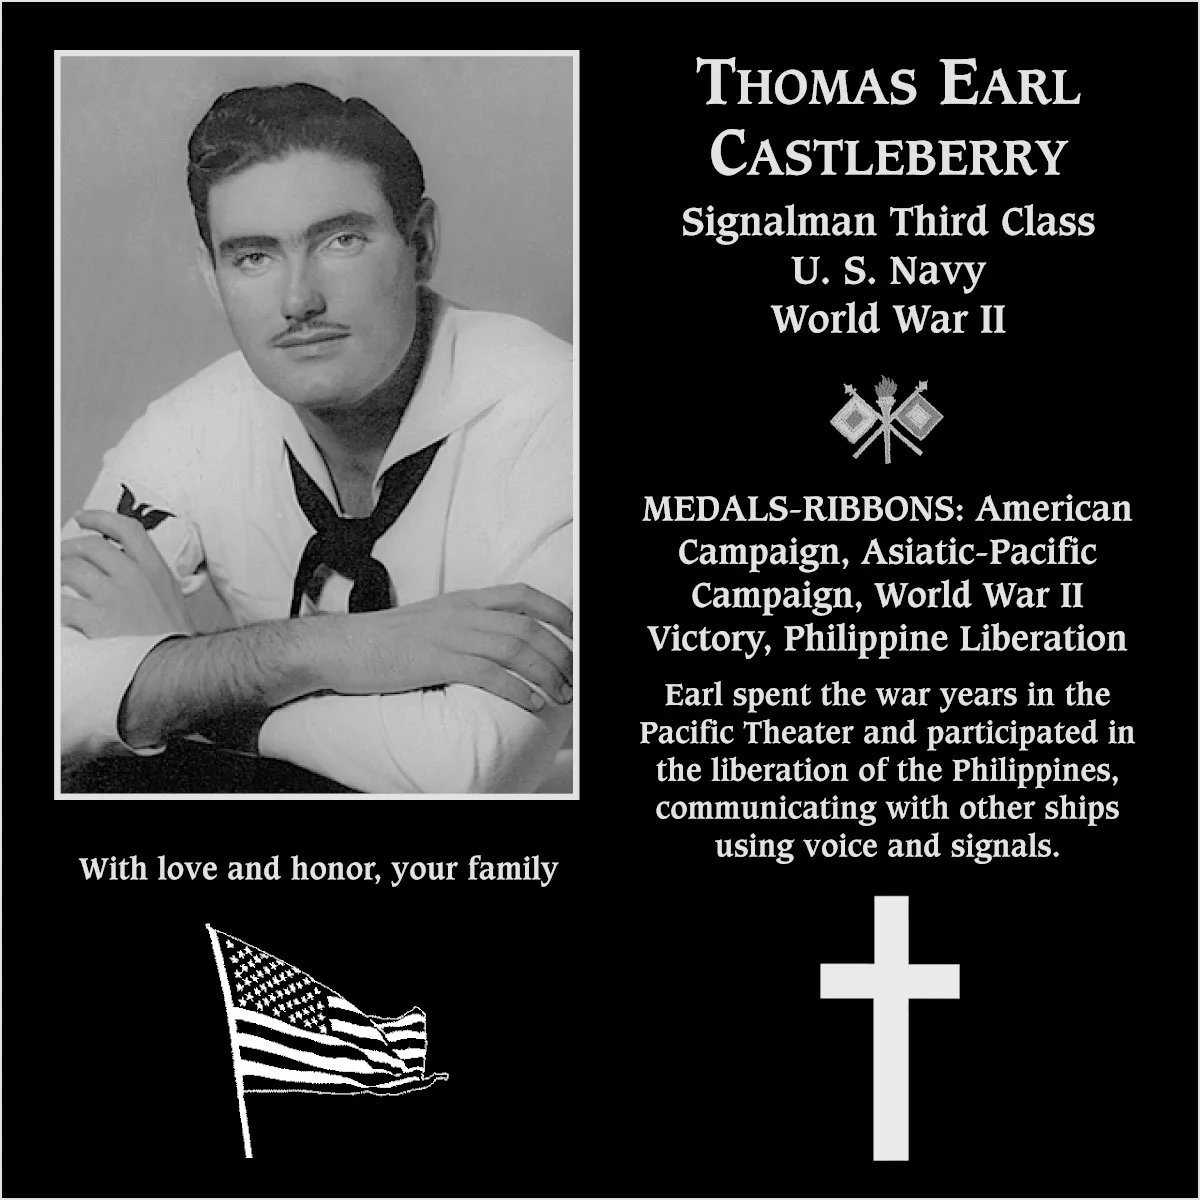 Thomas Earl “Earl” Castleberry